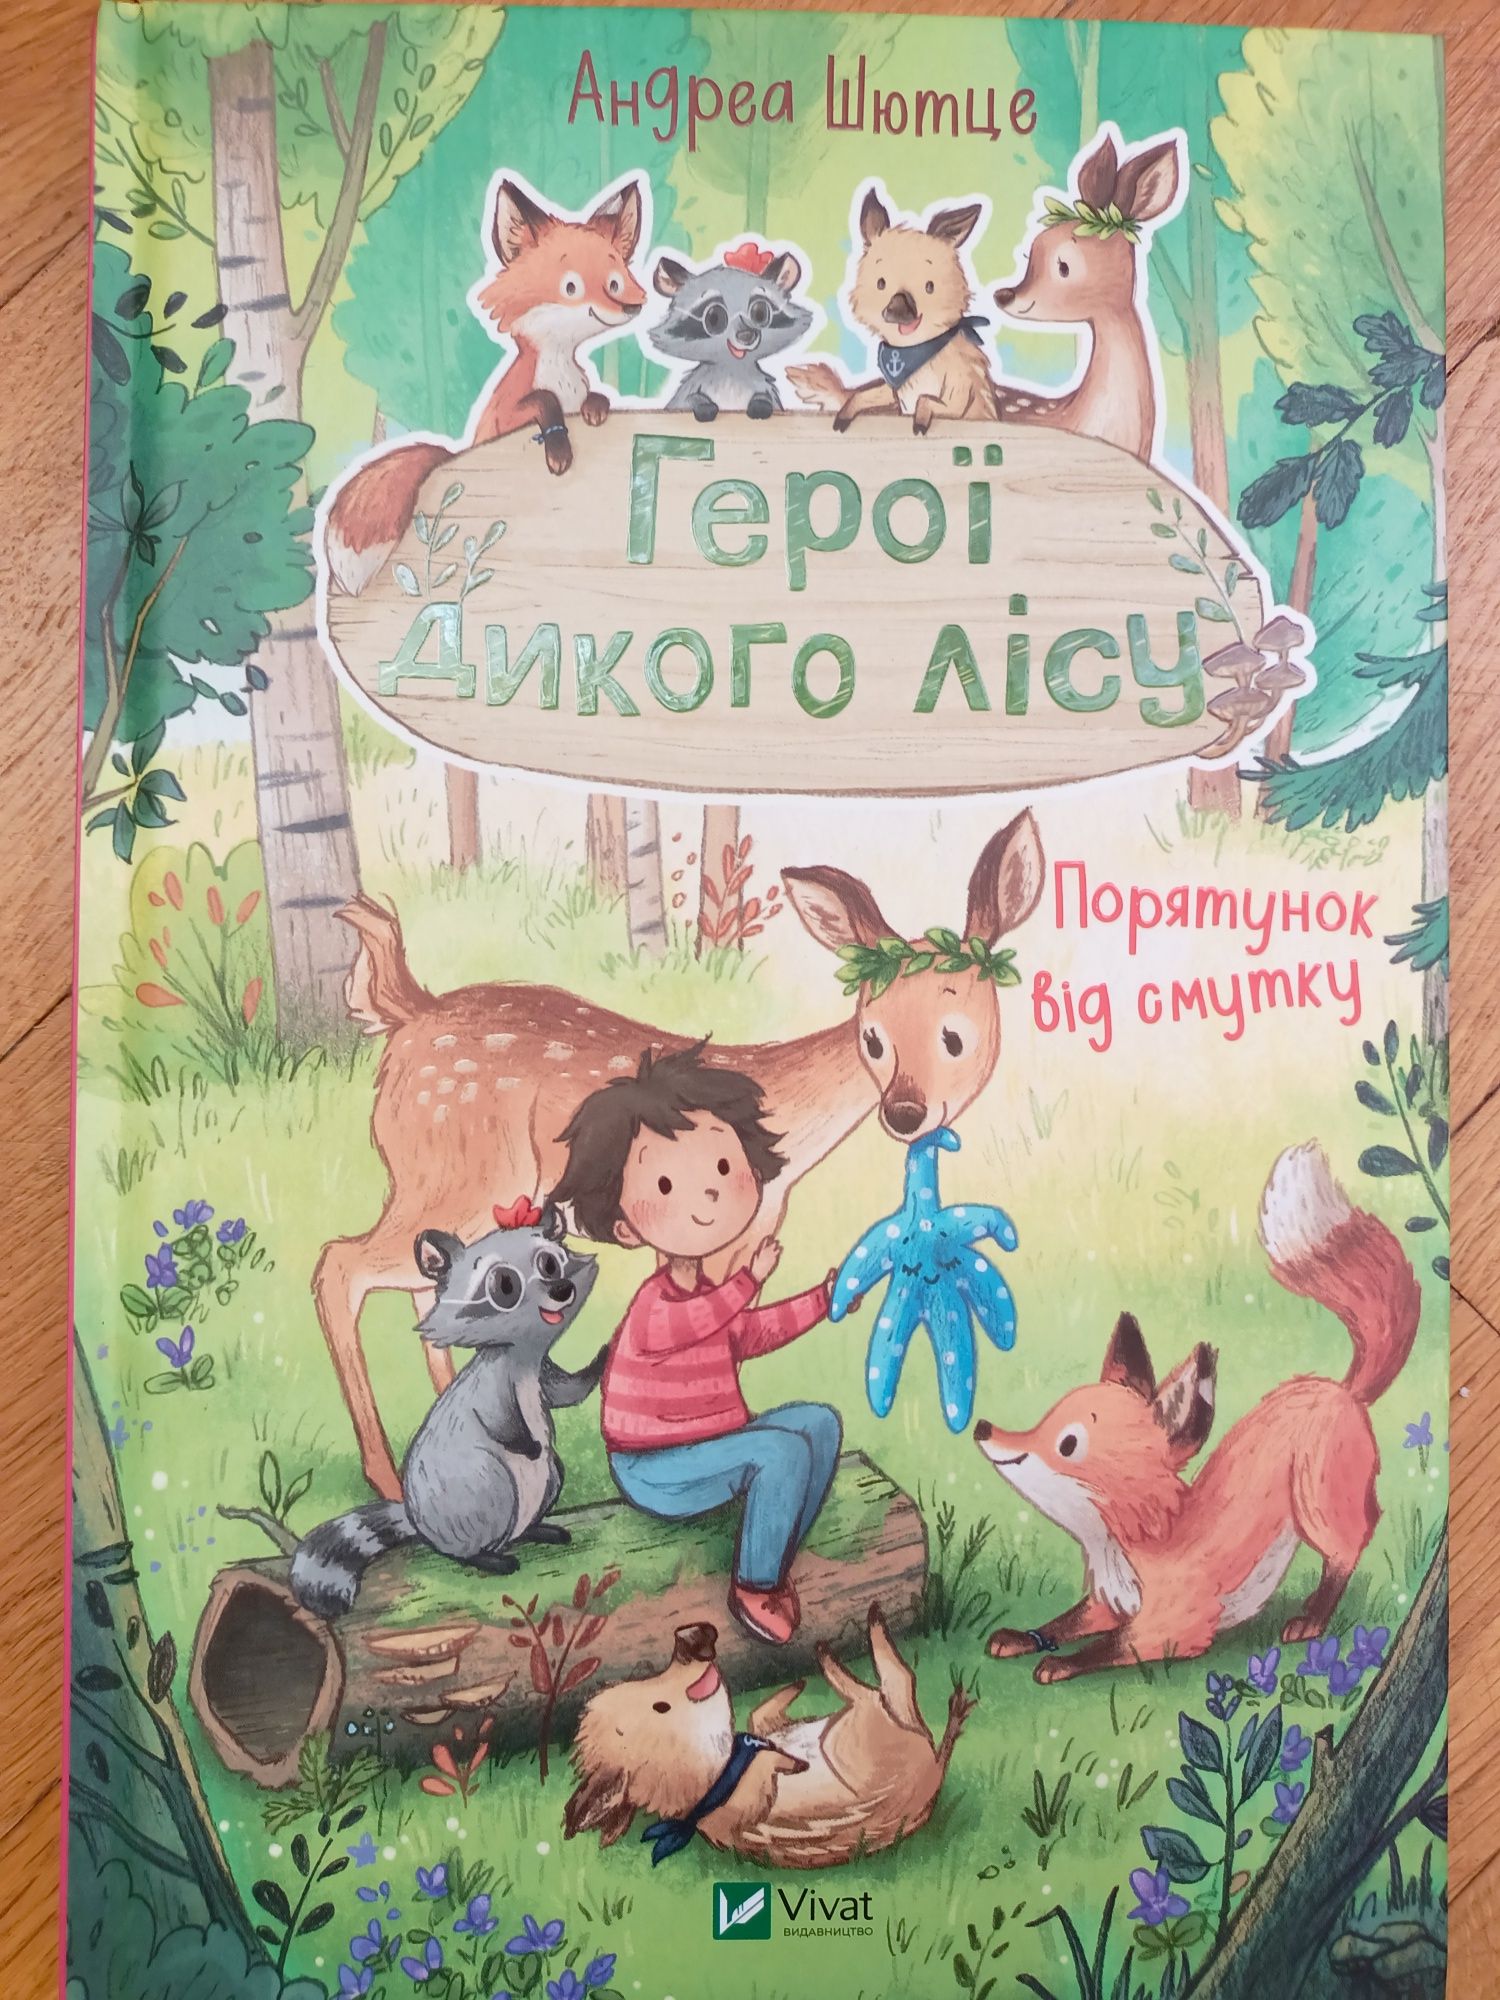 Детская книга из серии "Герої Дикого лісу" - "Порятунок від смутку"